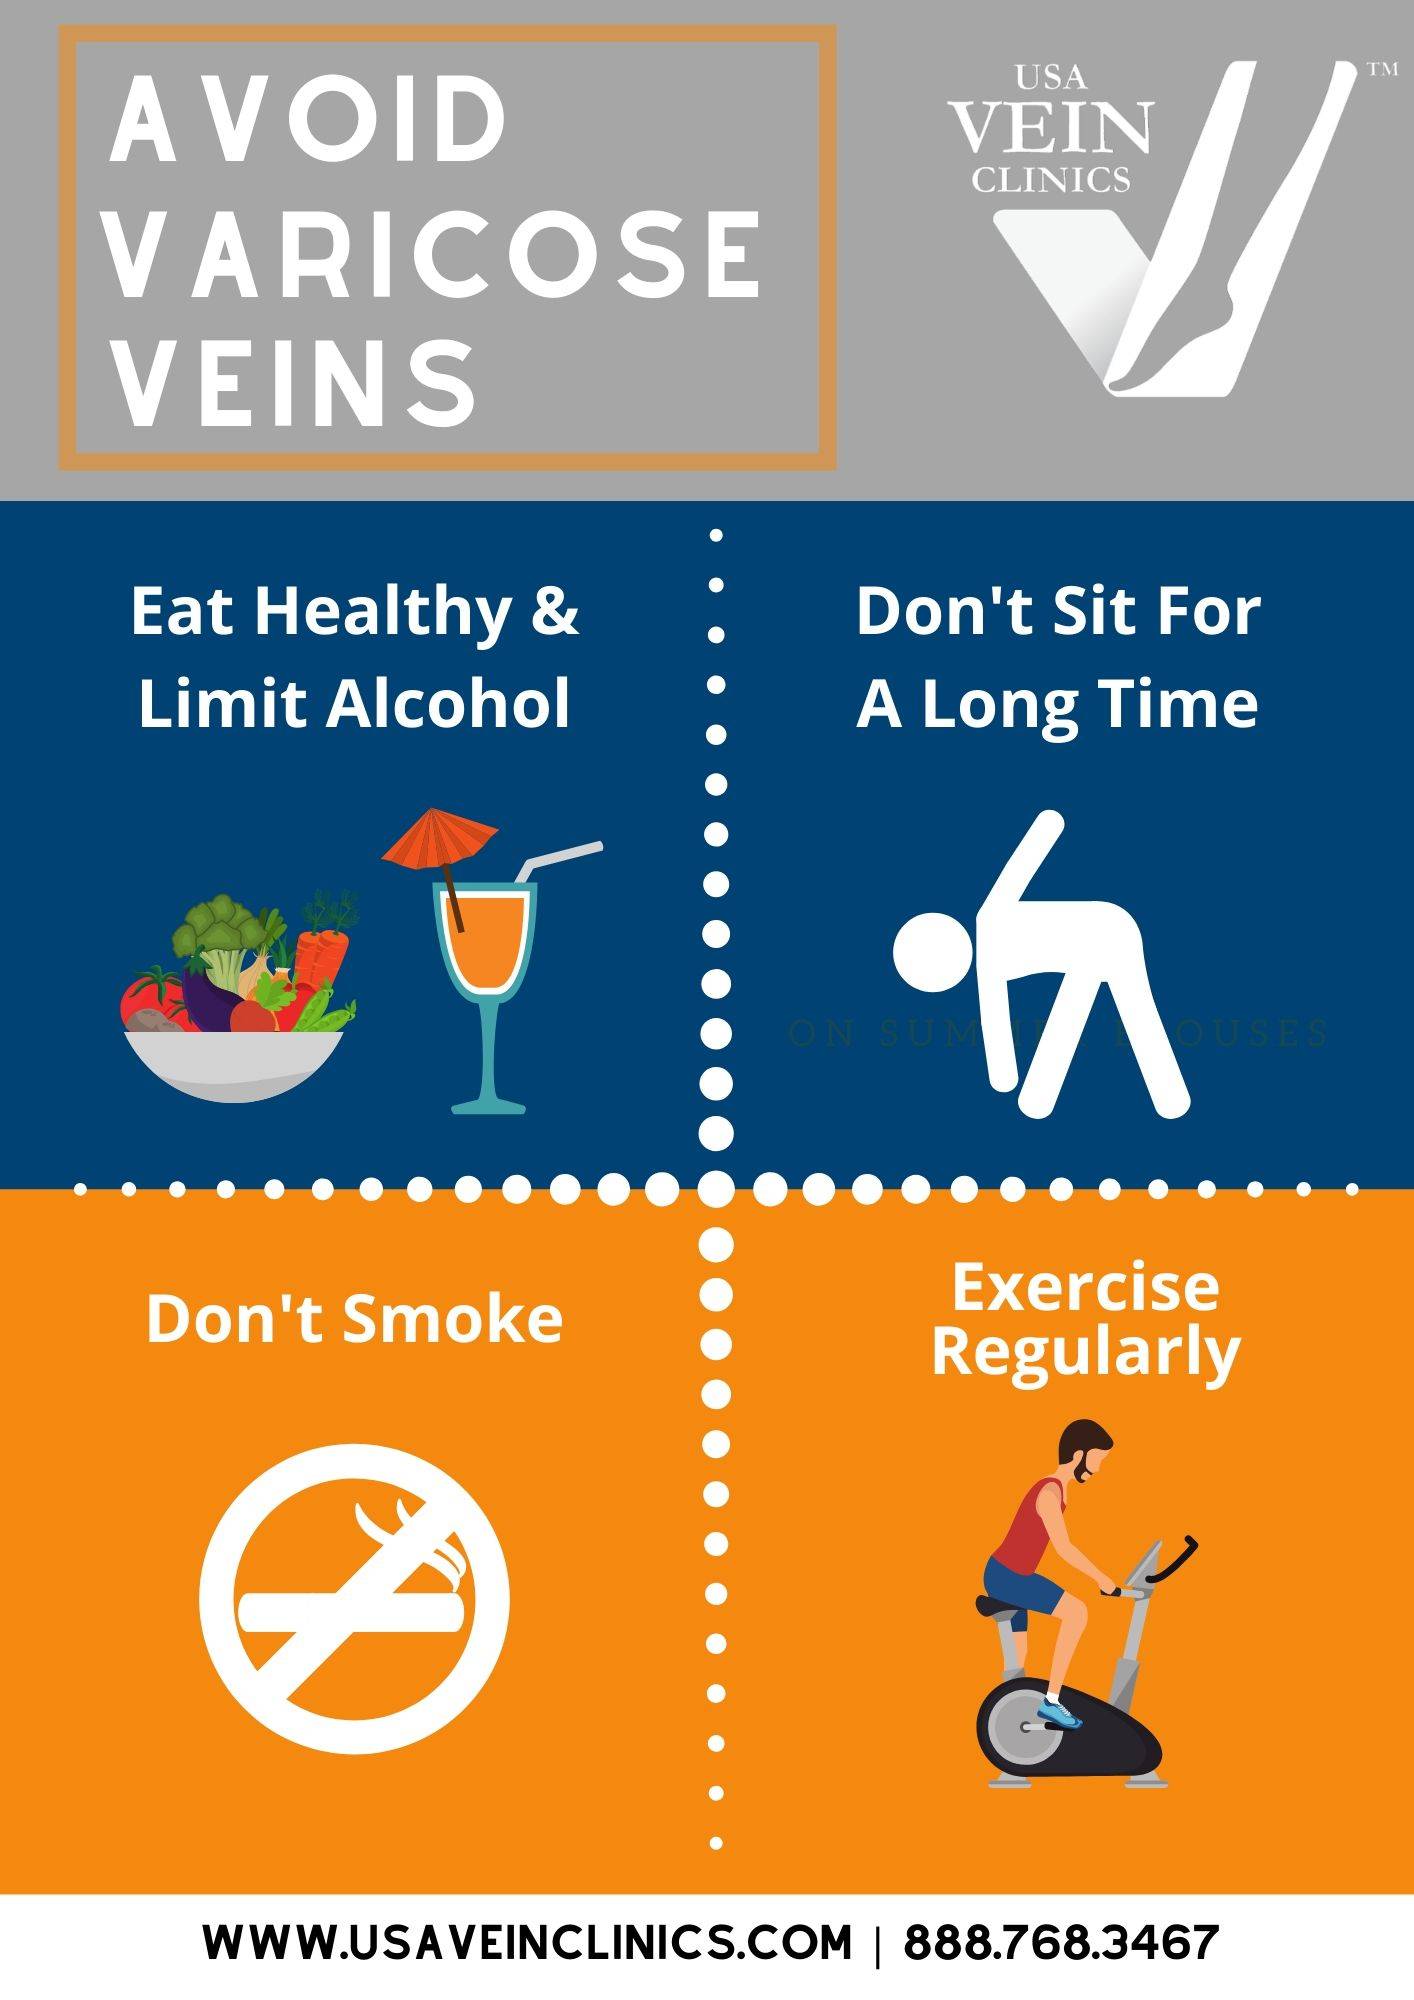 7 Ways to prevent Varicose Veins - Varicose Veins Prevention.